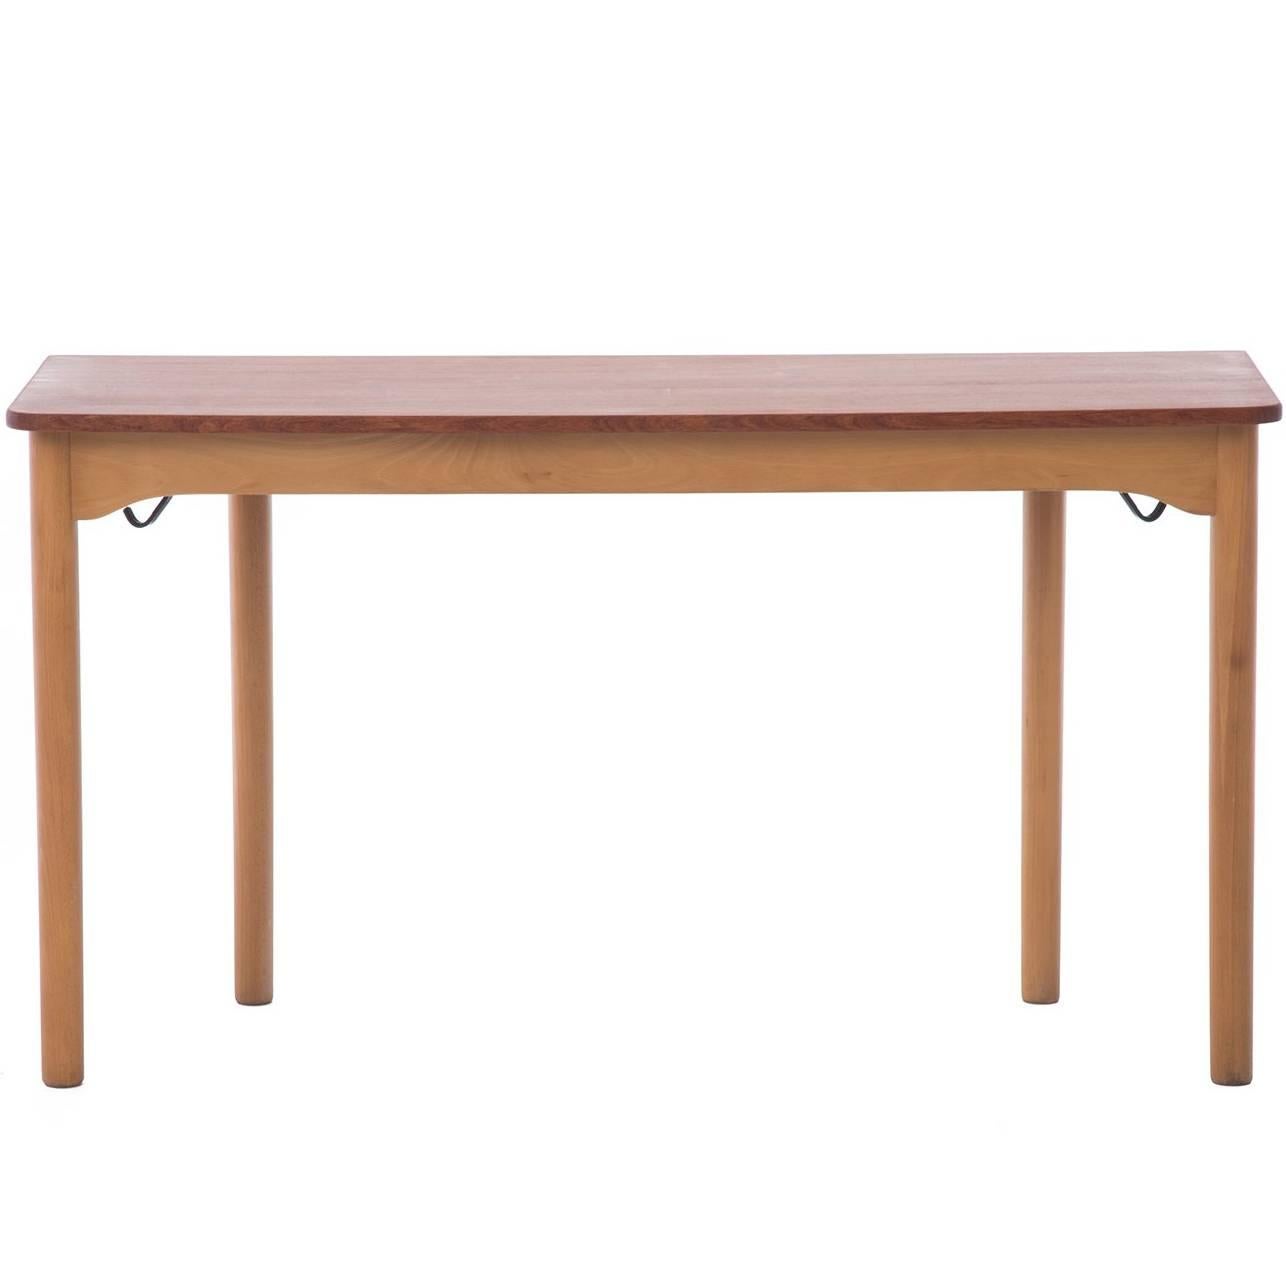 Danish Modern School Desk Console Table by Arne Jacobsen